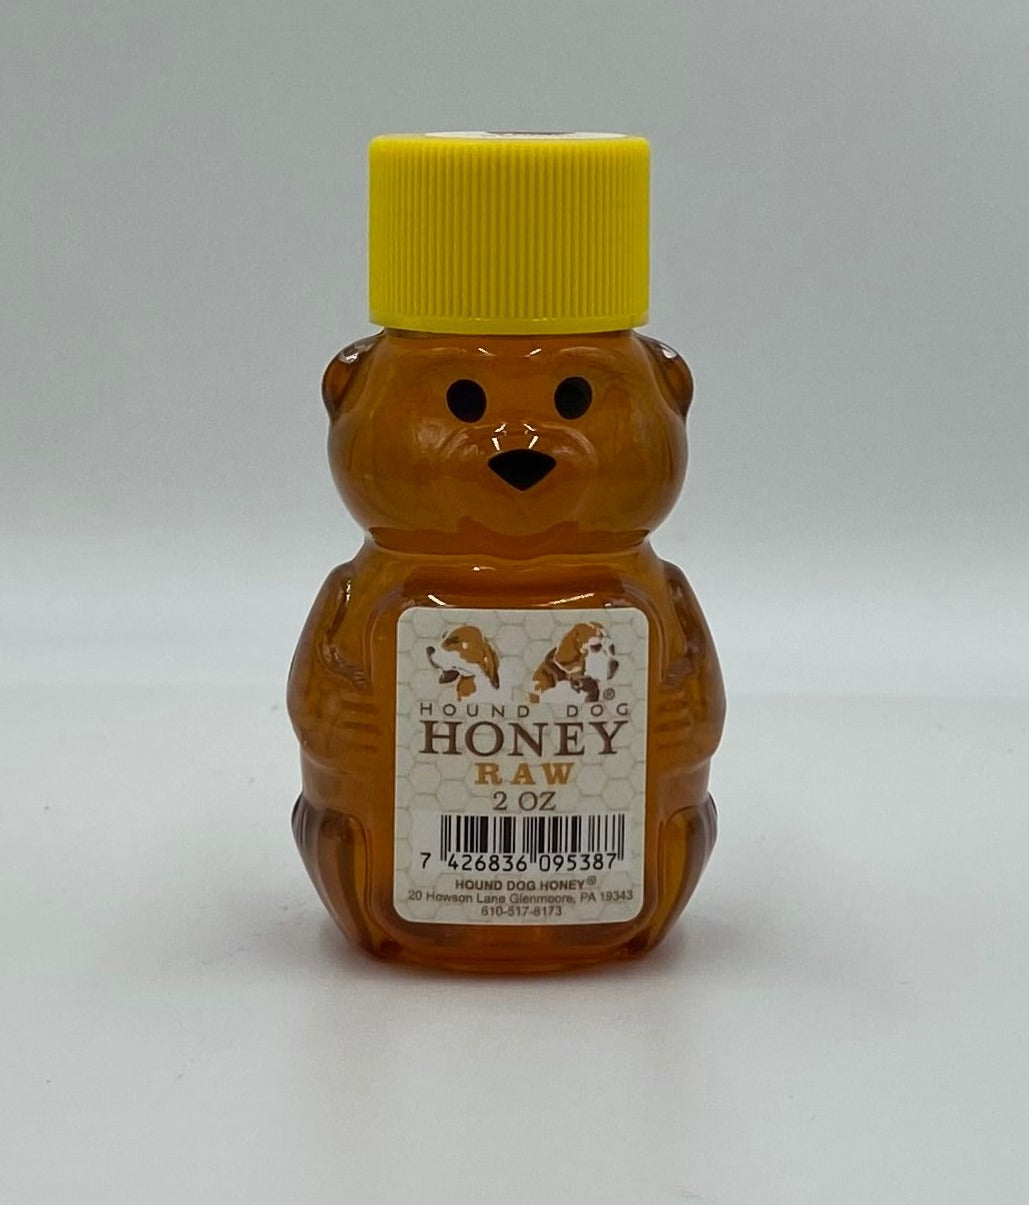 Hound Dog Honey - 2 oz